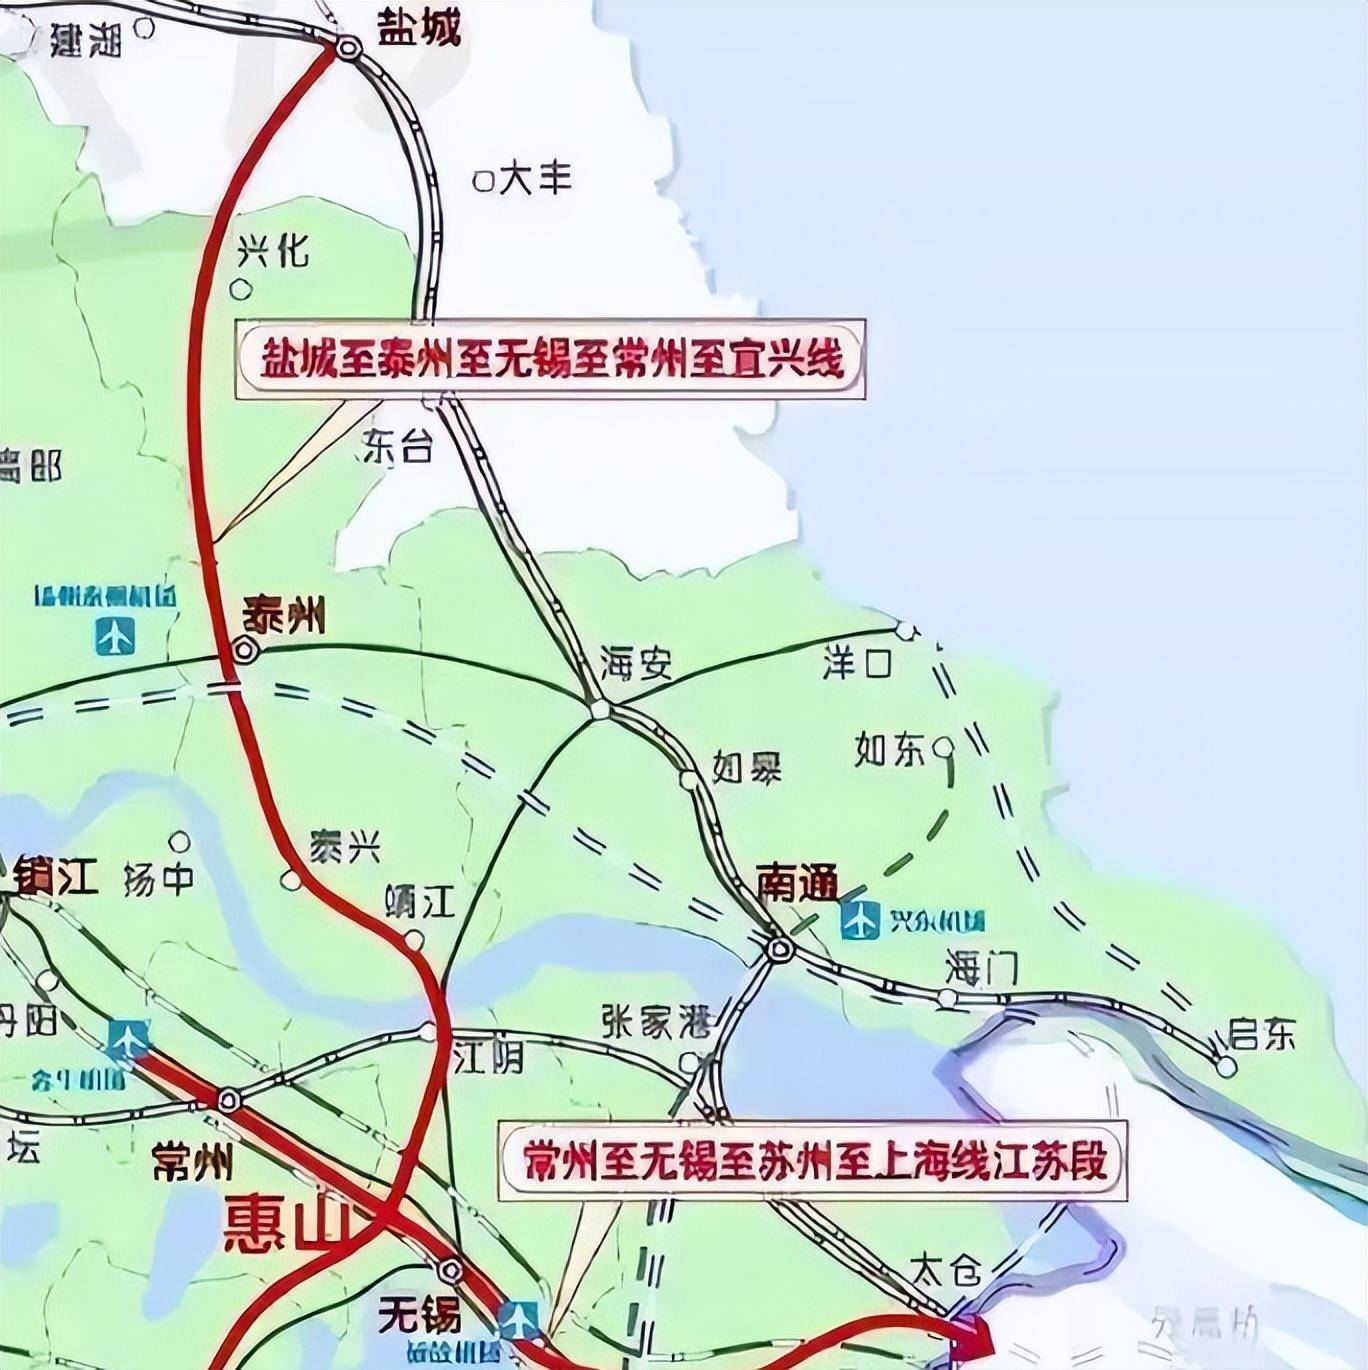 盐宜高铁是连接盐城与宜兴的高速铁路,全线位于江苏境内,更是被称为